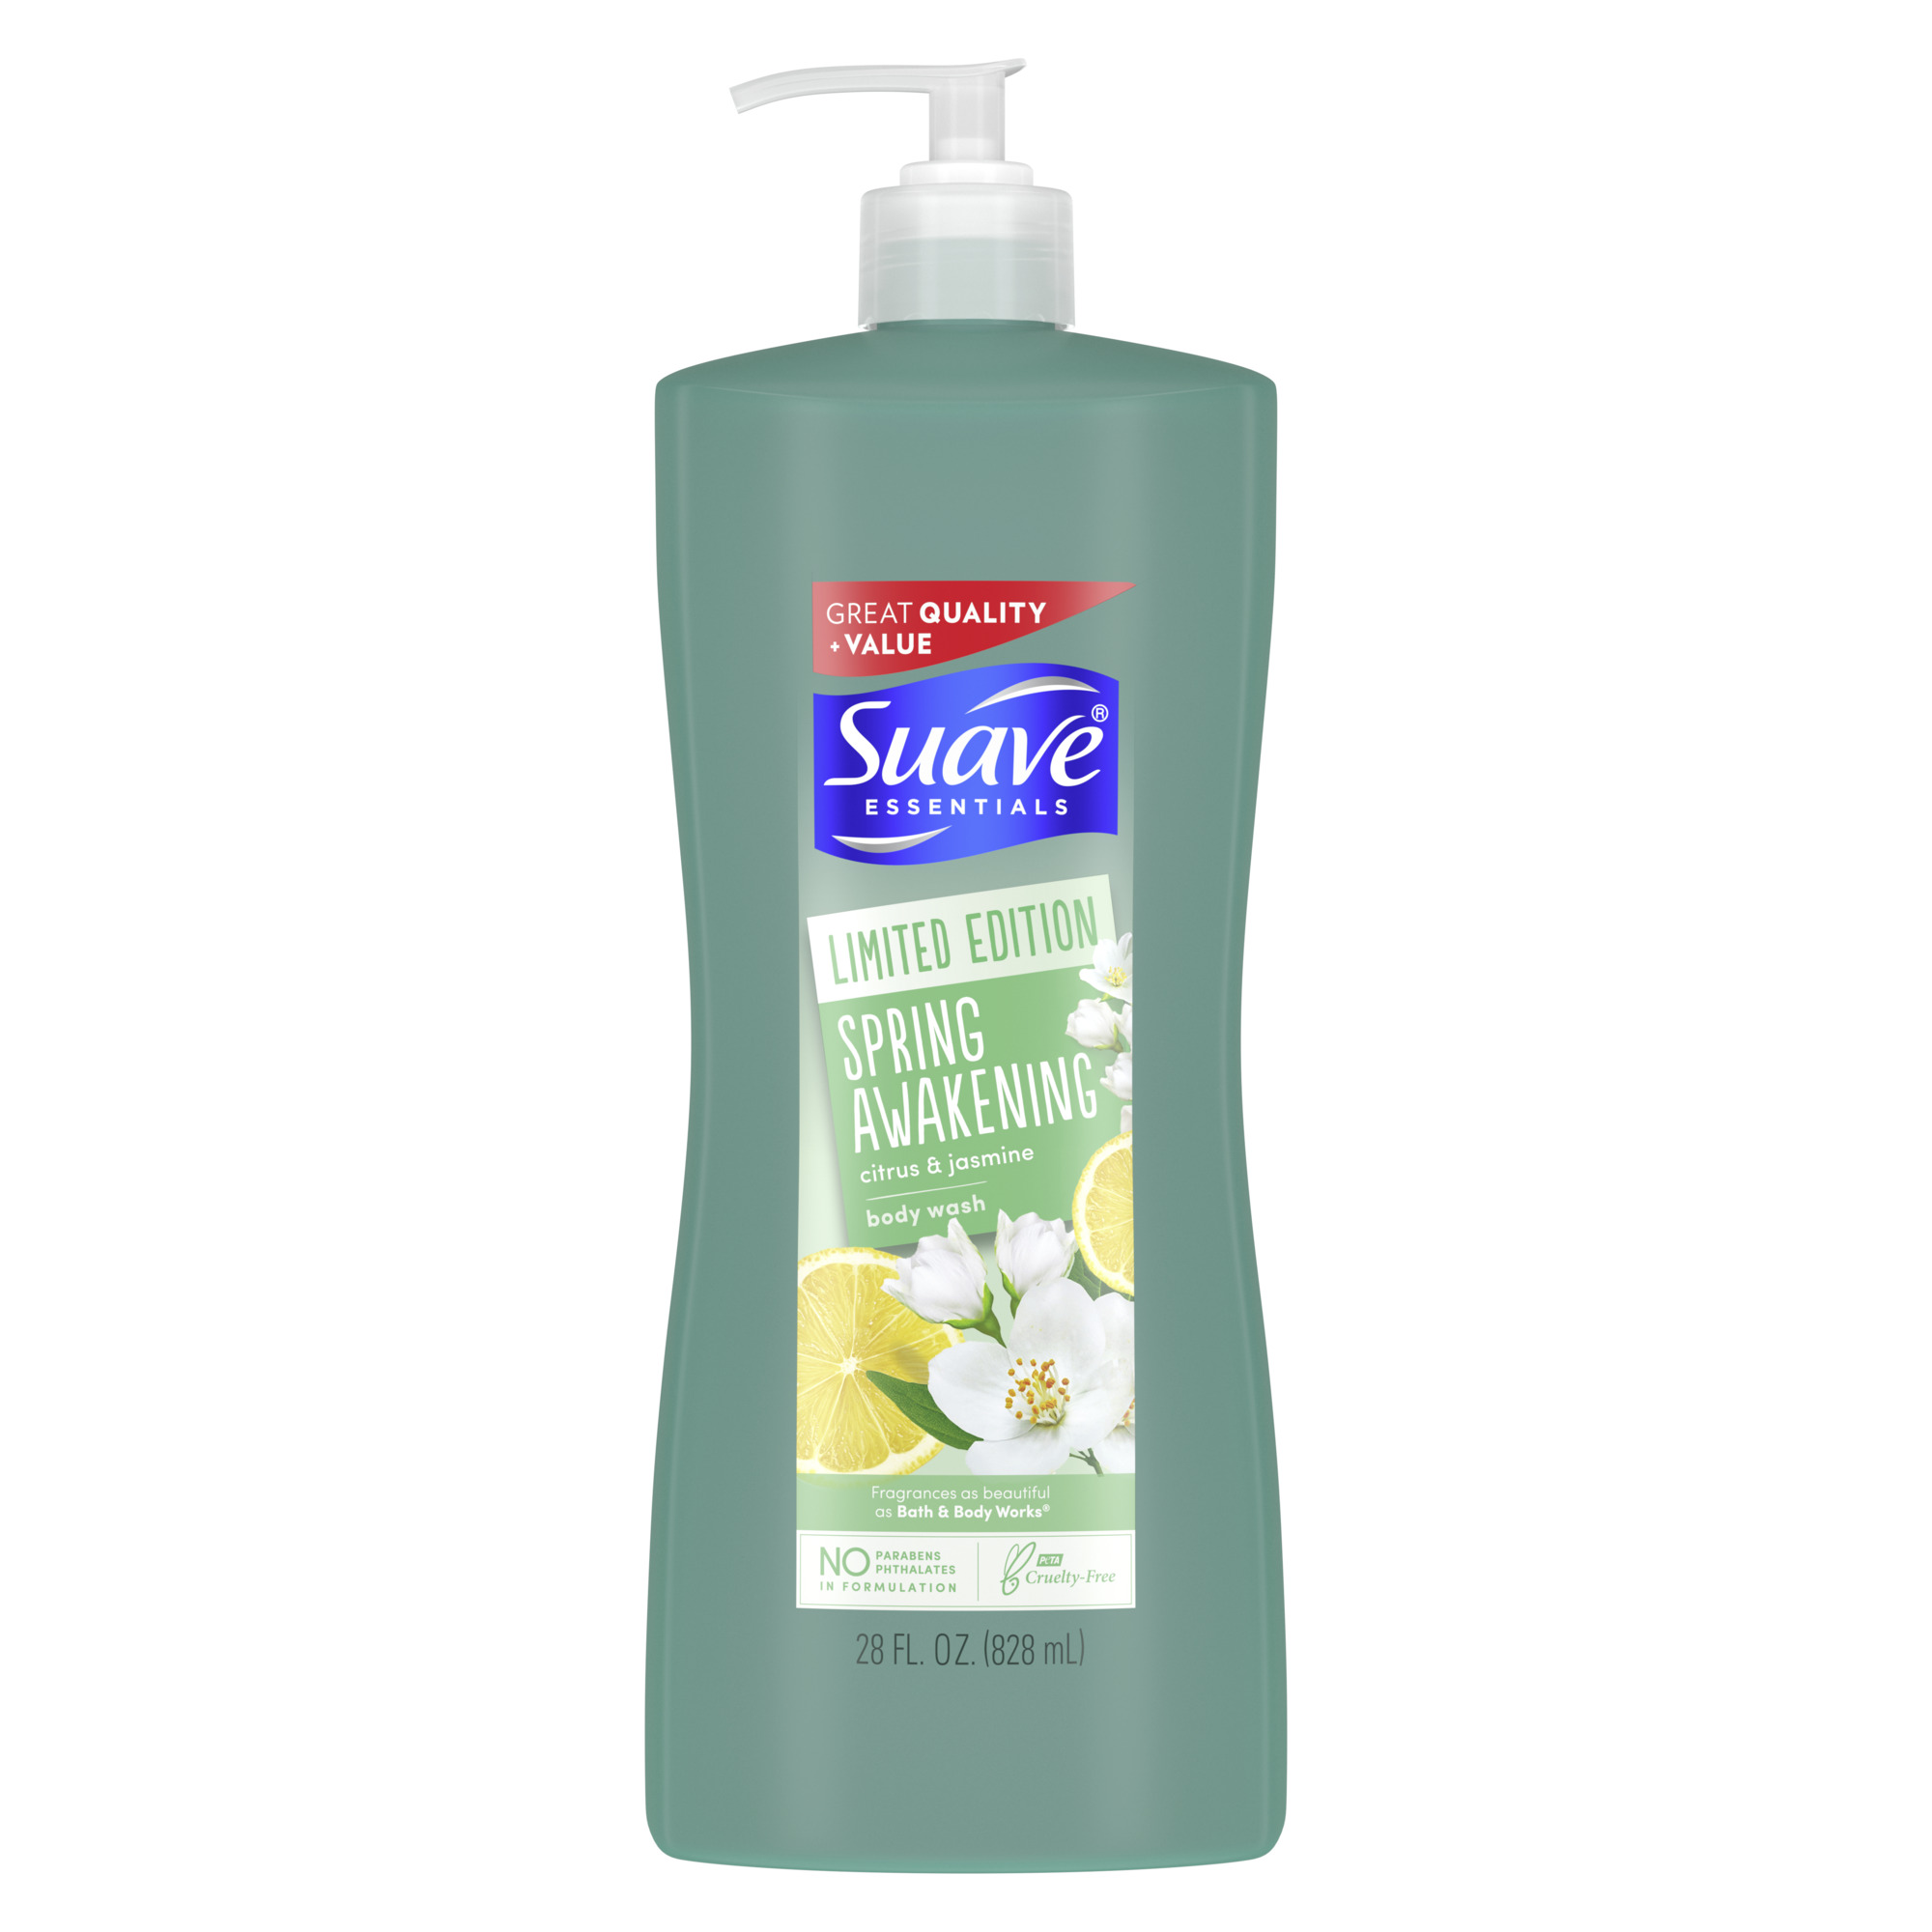 Suave Limited Edition Body Wash Spring Awakening 28 fl oz - image 9 of 11